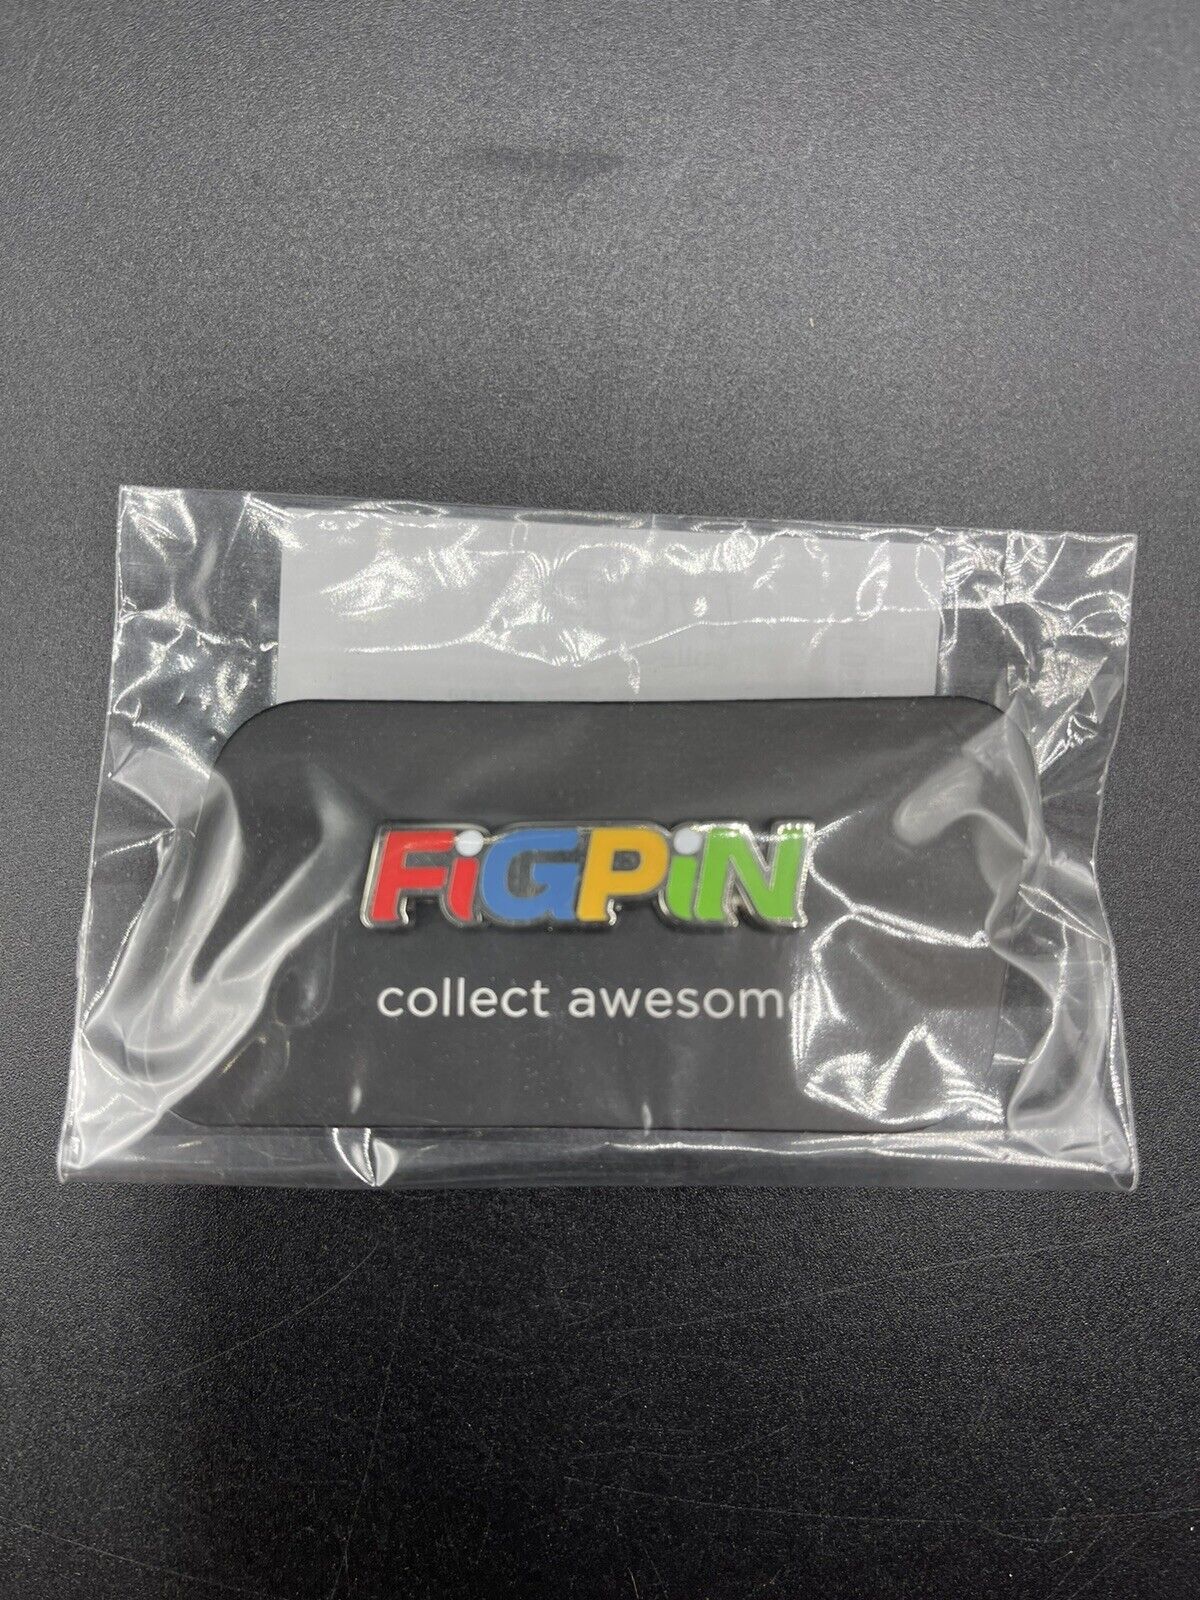 FiGPiN Logo Pin eBay L94 Live Sales EVEND Exclusive